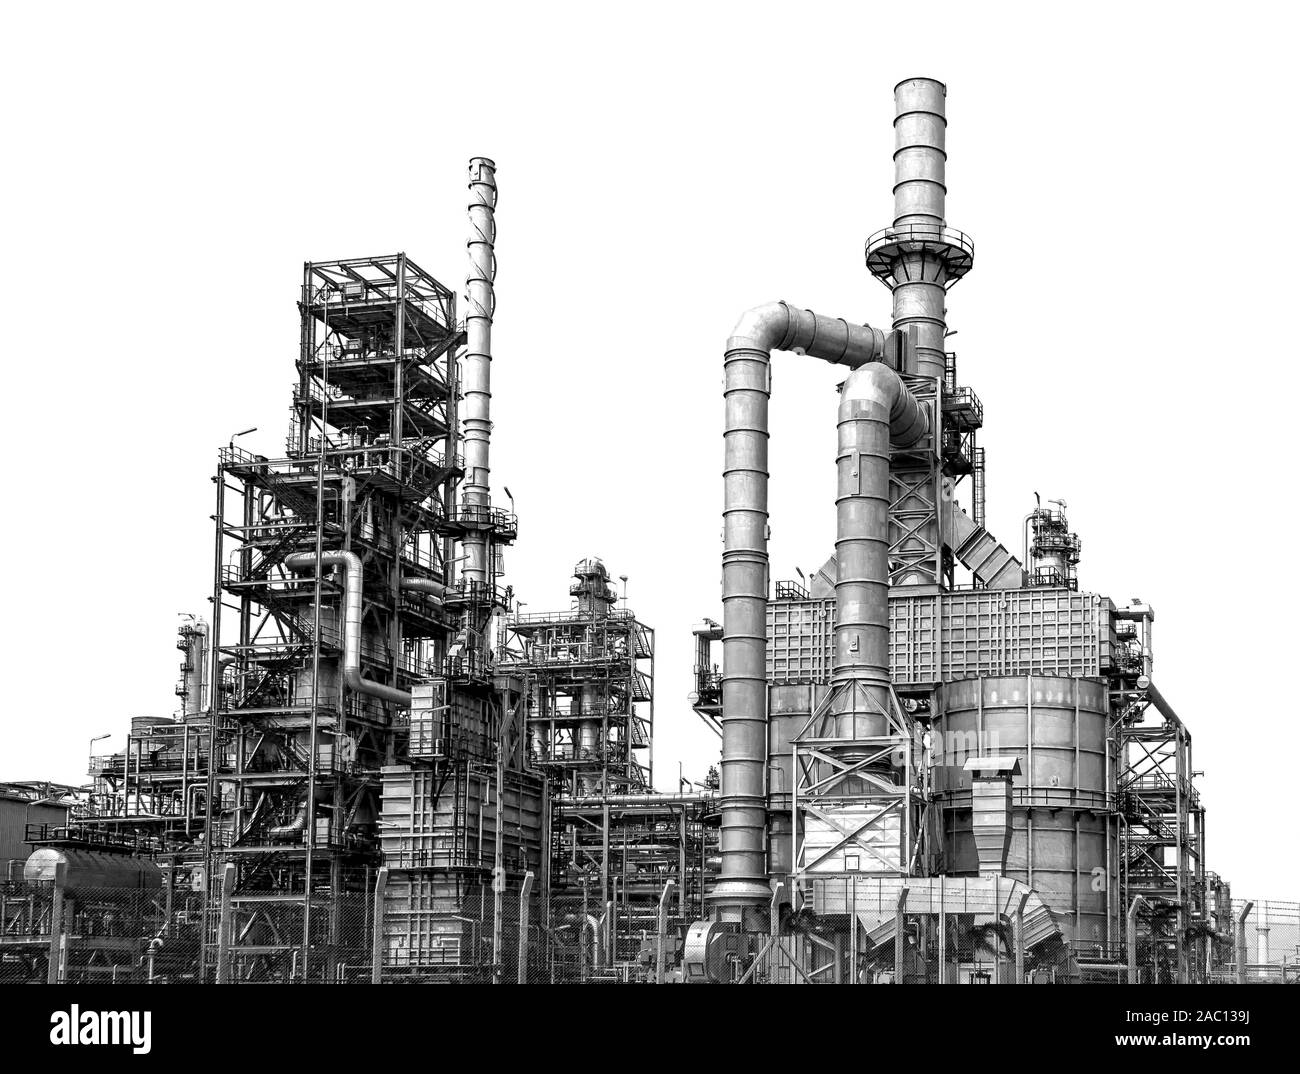 Industrielle Ölraffinerie, Detail der Ausstattung Ölpipeline Stahl mit Ventilen ein - aus den Druck in der Produktion bei der Raffination Fabrik auf weißen reduzieren b Stockfoto